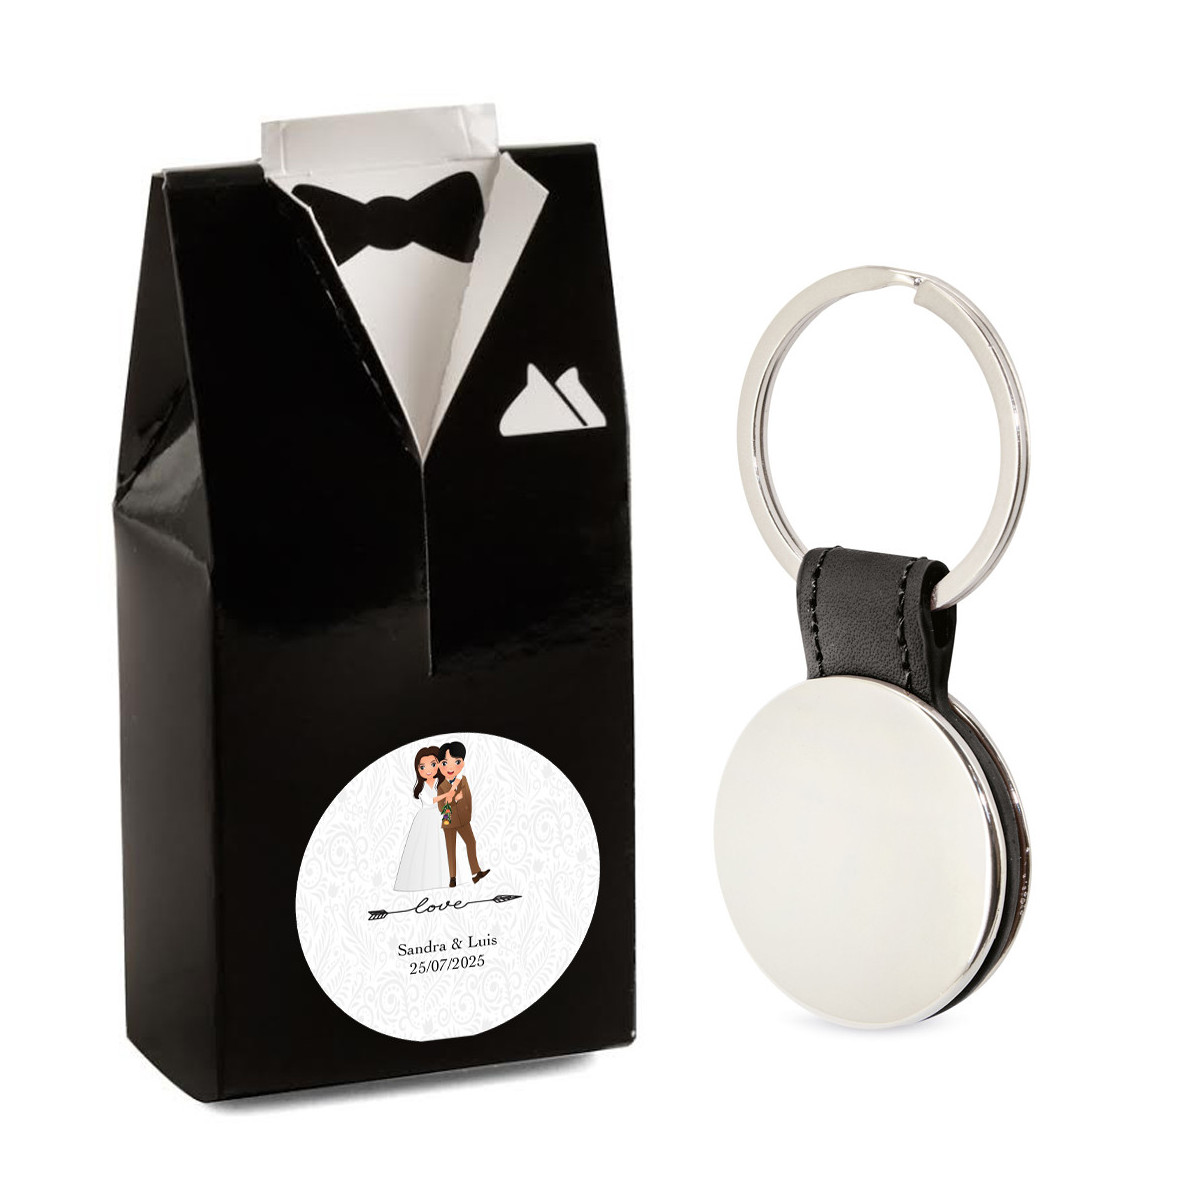 Chaveiro elegante para homens em caixa de presente com design de smoking e adesivo de casamento personalizável